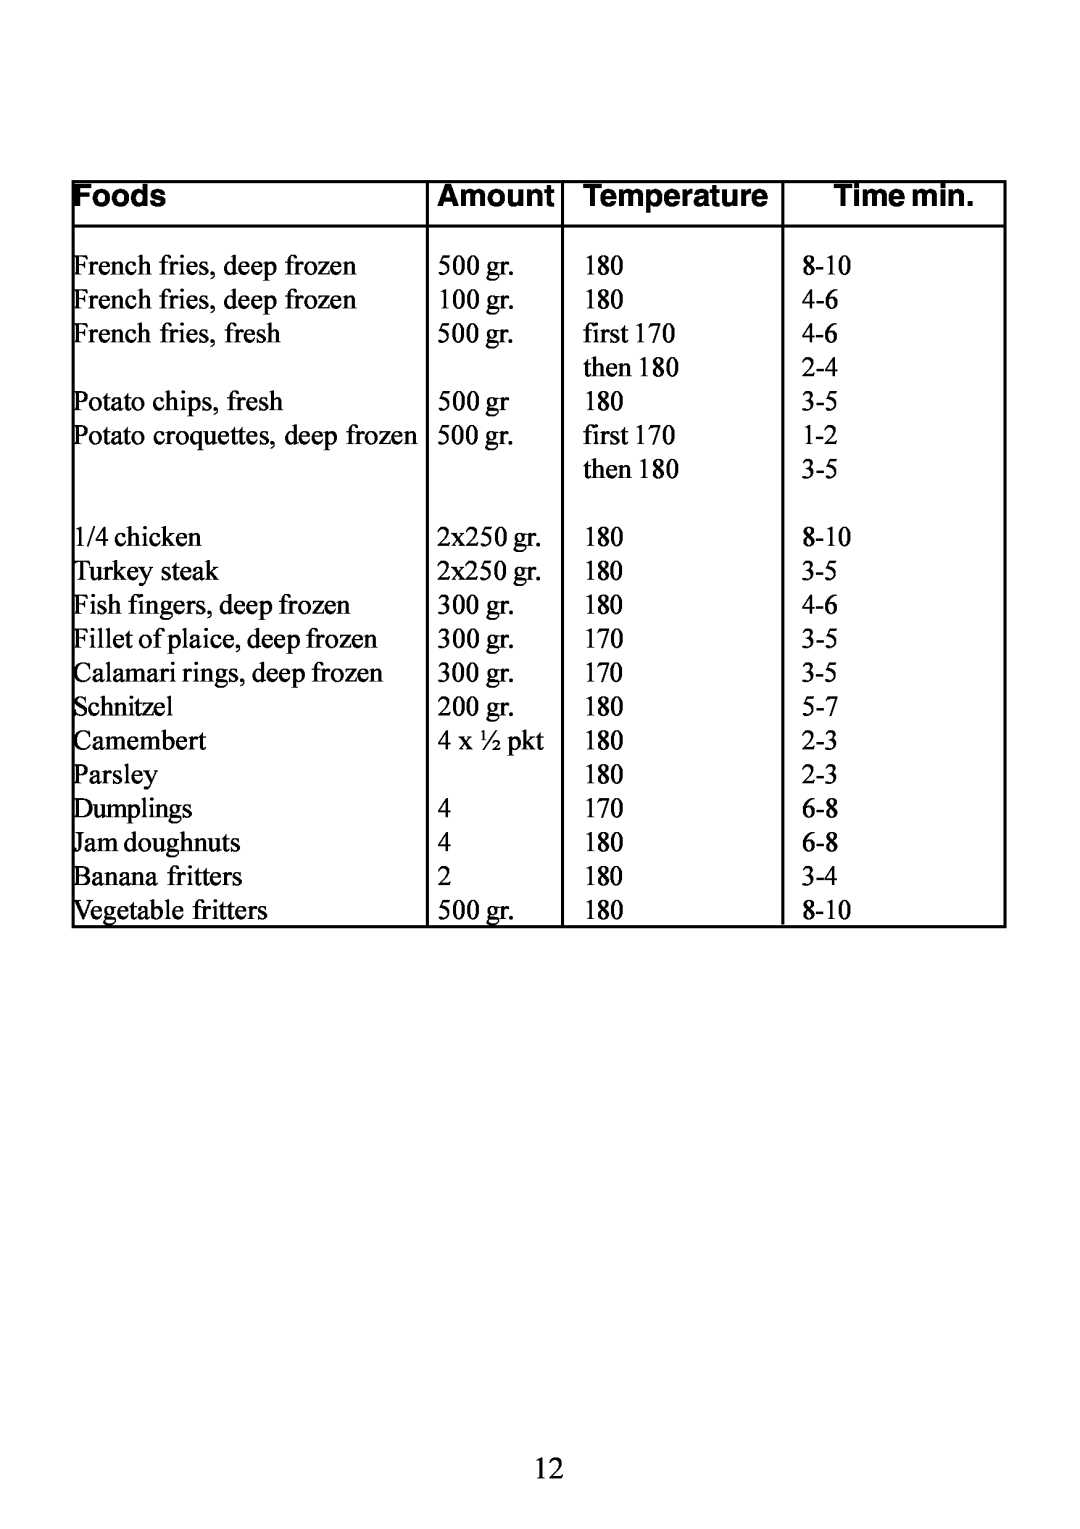 Electrolux 130 FG-m manual Amount, Temperature, Time min, Foods, Potato croquettes, deep frozen 